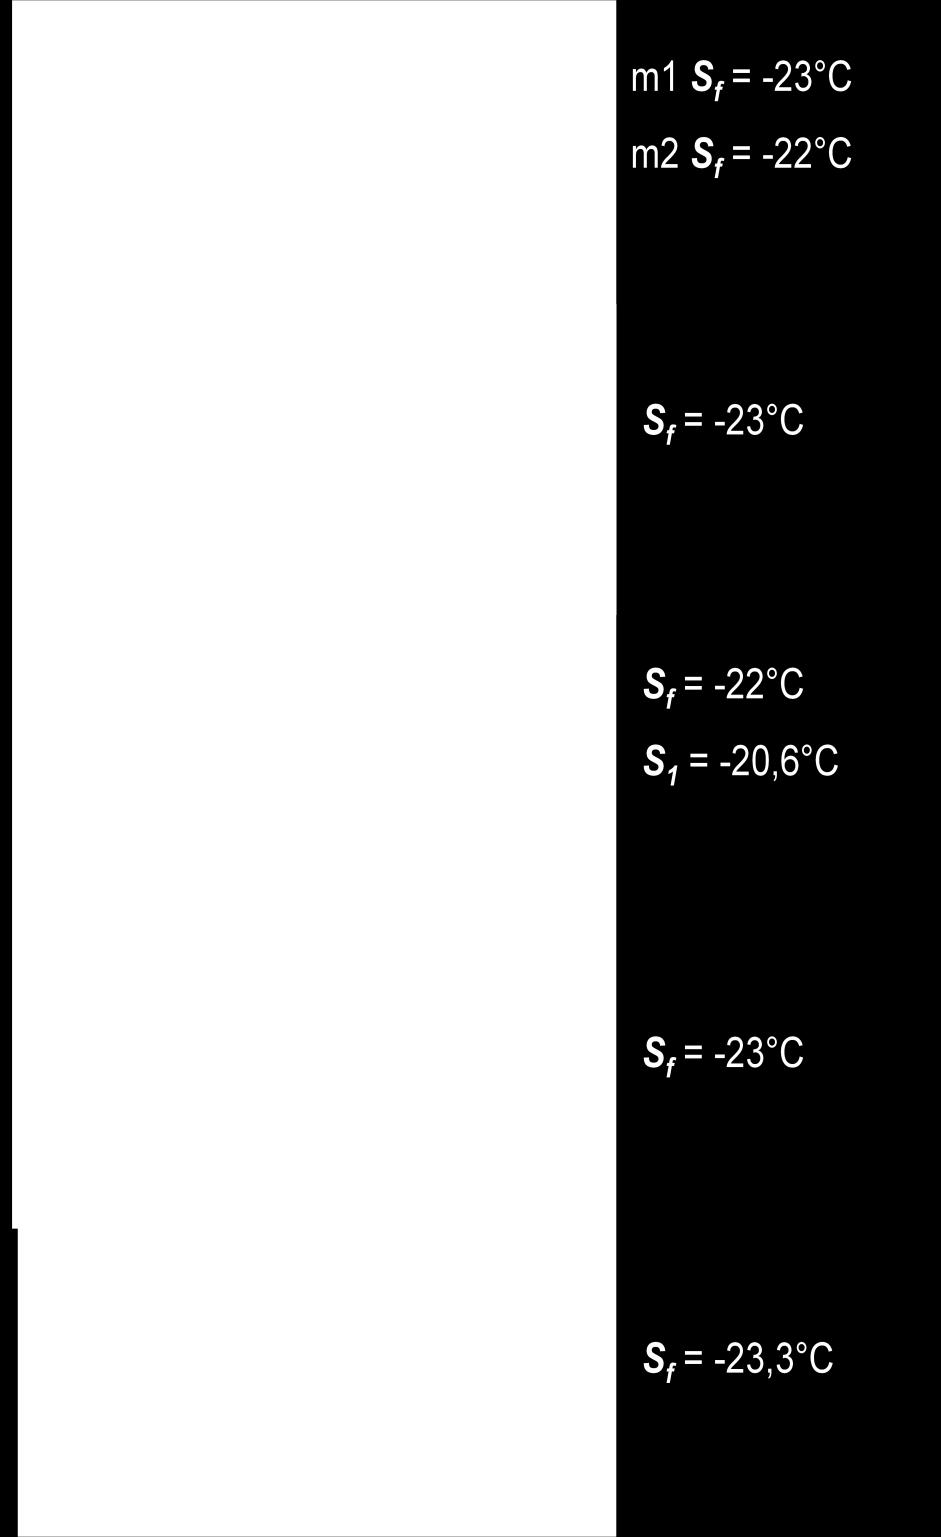 monitoramento do freezer (S f ), gradiente de temperatura (G t ) para cada